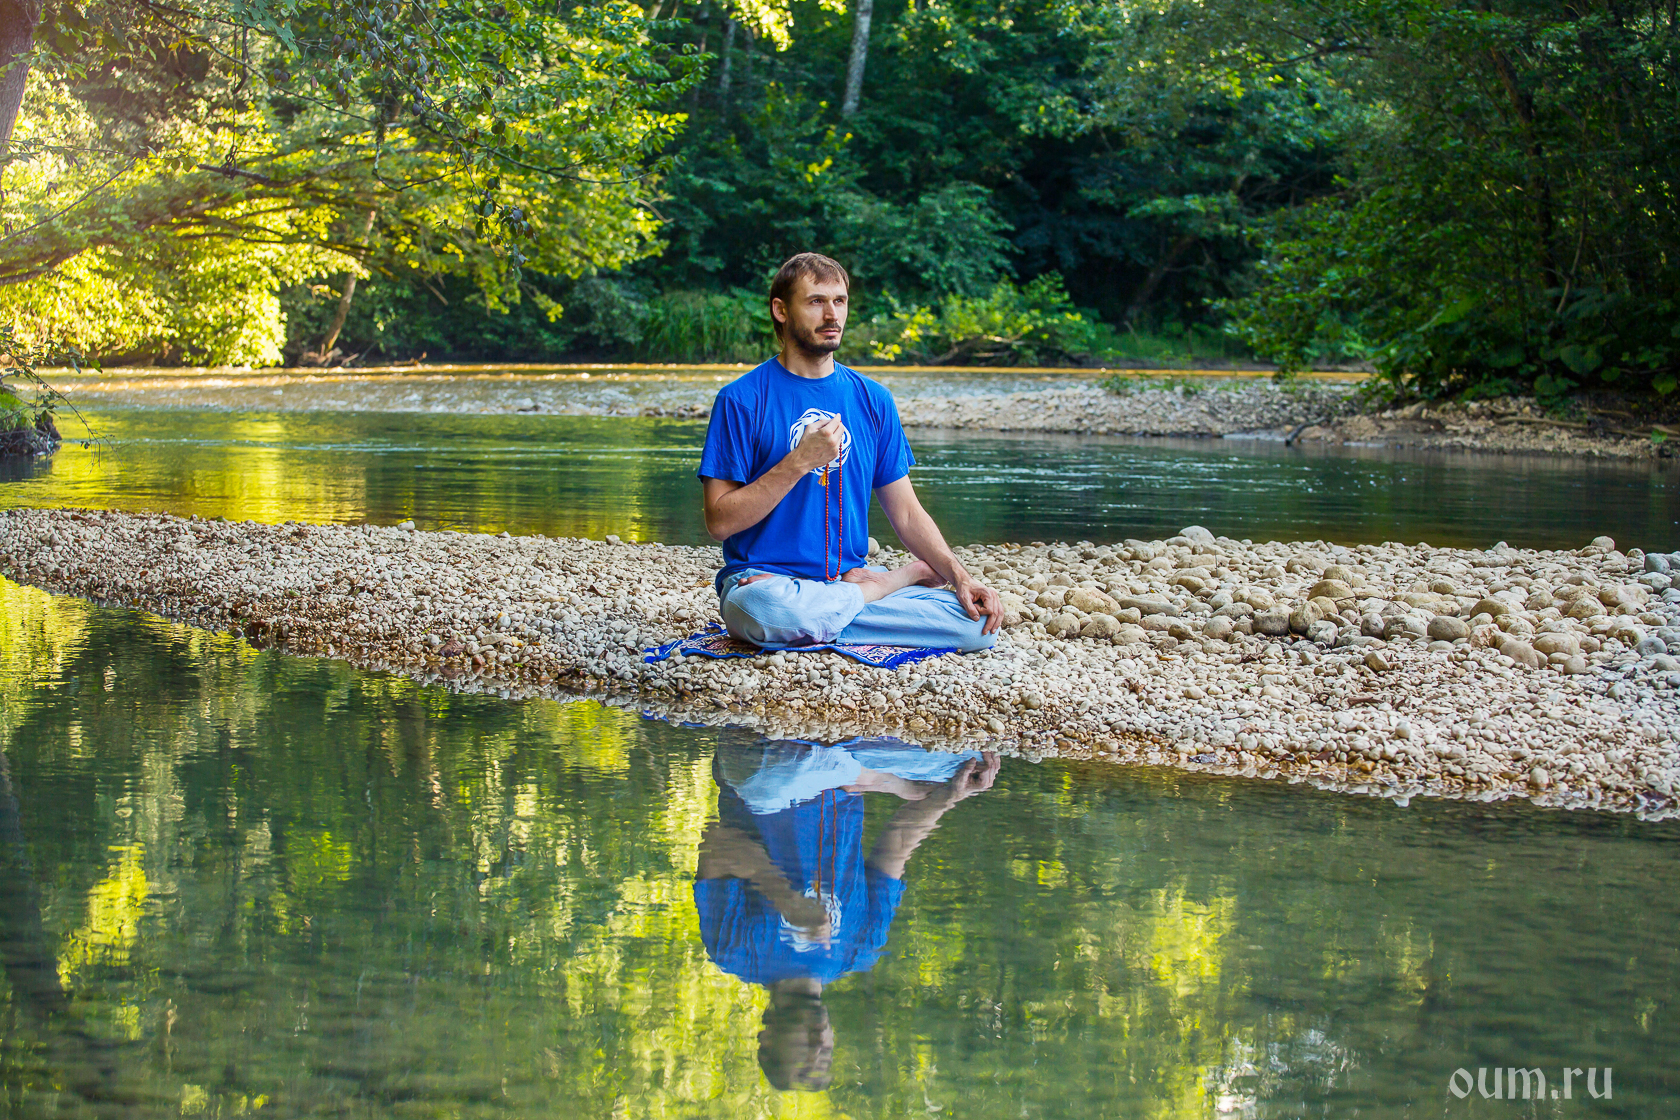 Практика утренней медитации, медитация в лесу, река, природа, практика на природе, мантраяна, практика мантры, четки, ом